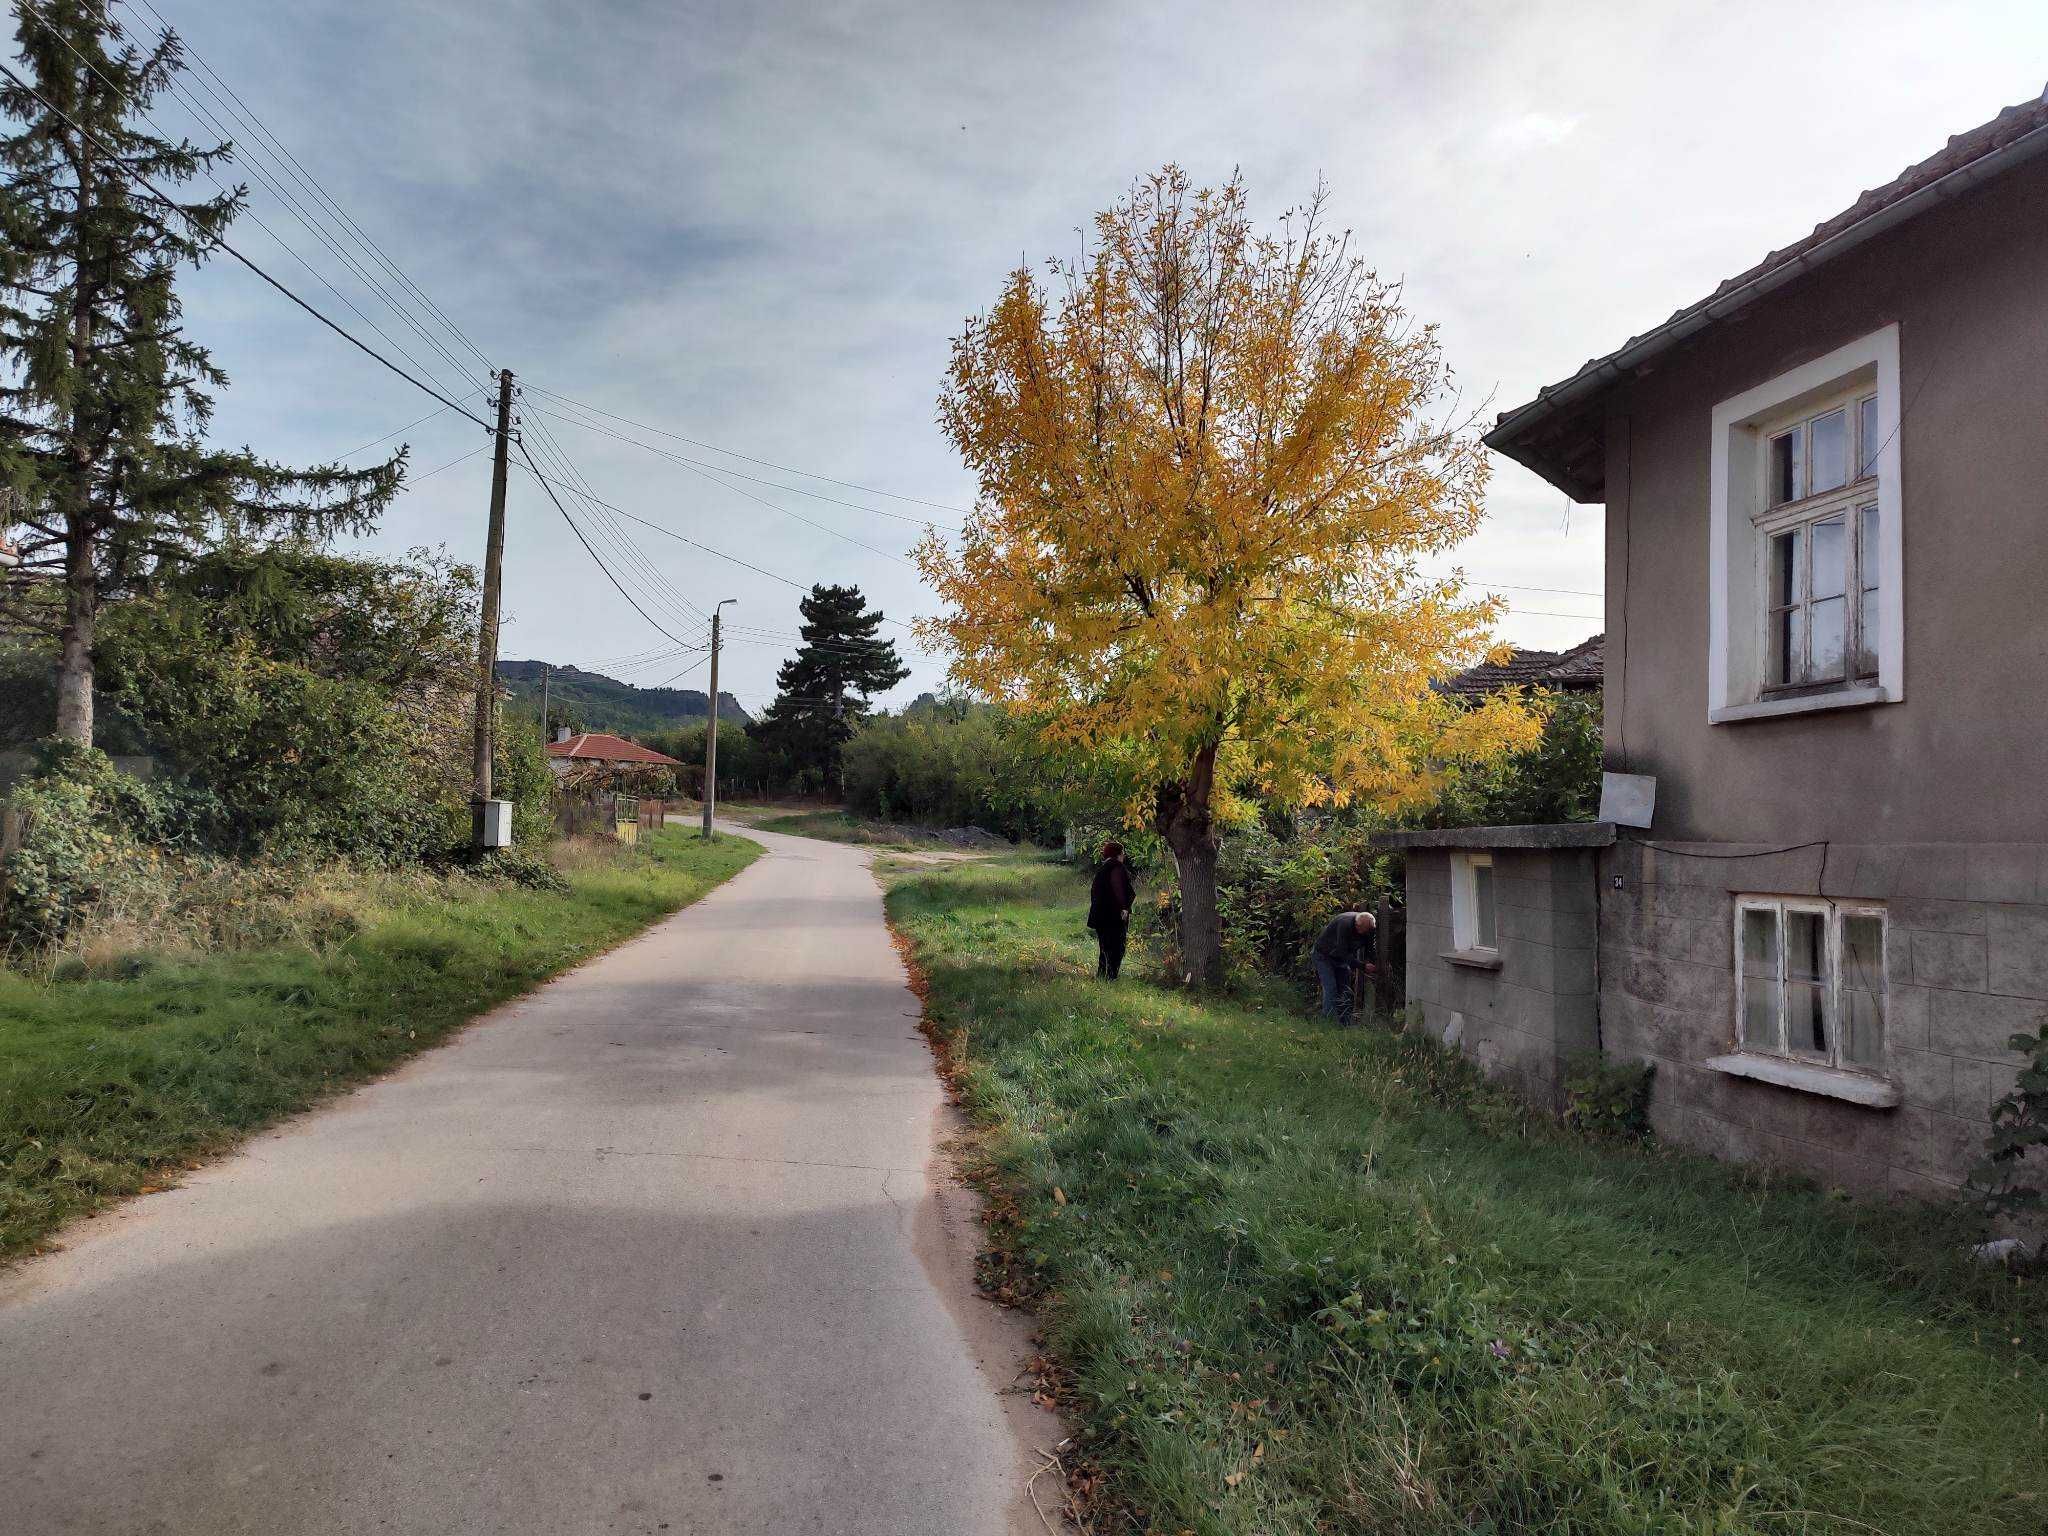 Продава двуетажна къща в село Дъбравка до Белоградчик